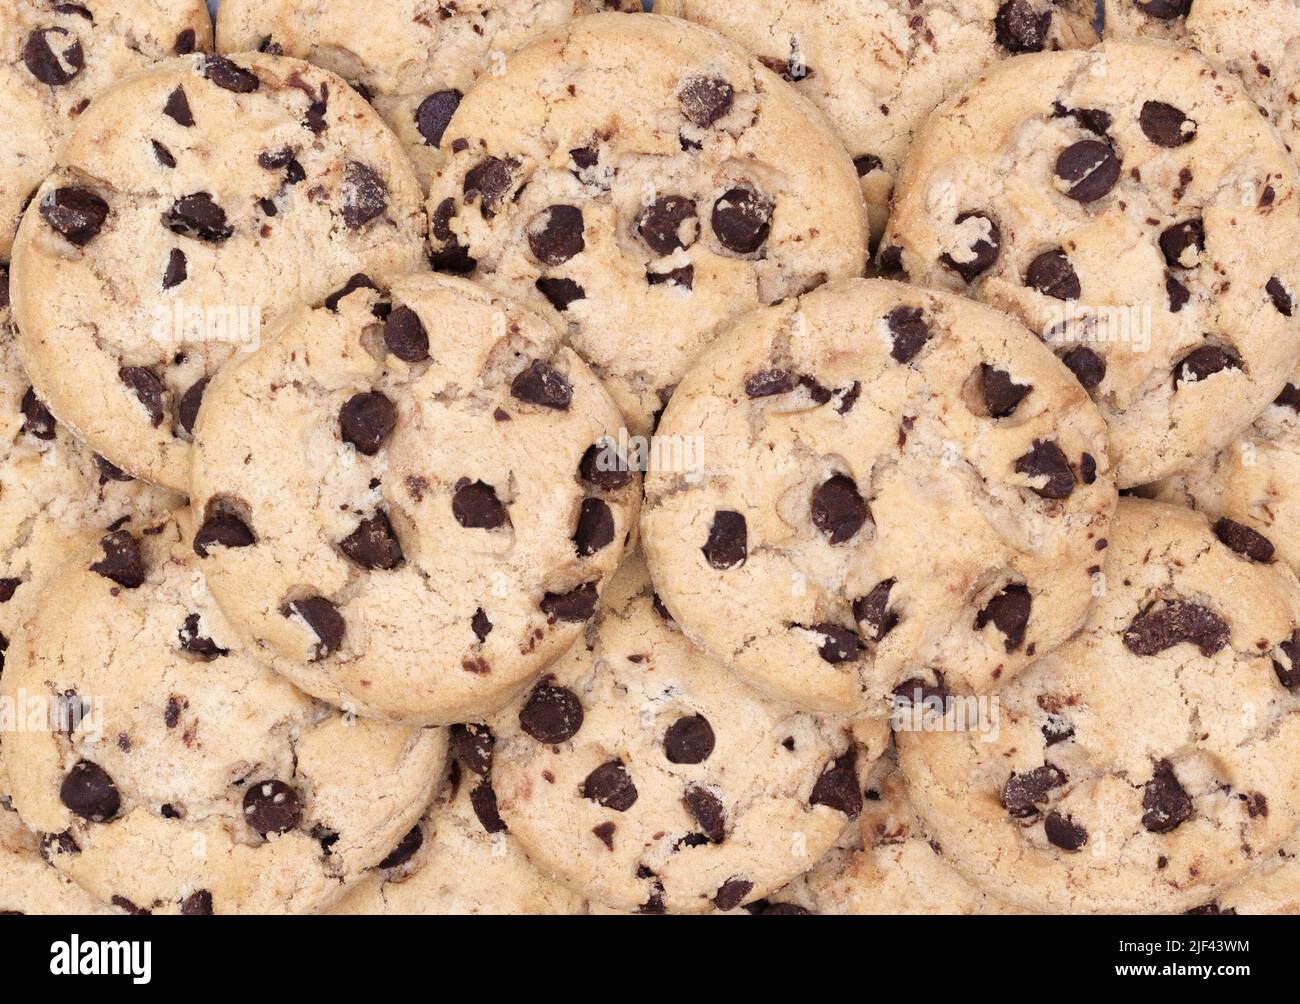 Chocolate Chip Cookies füllen den Rahmen Stockfoto